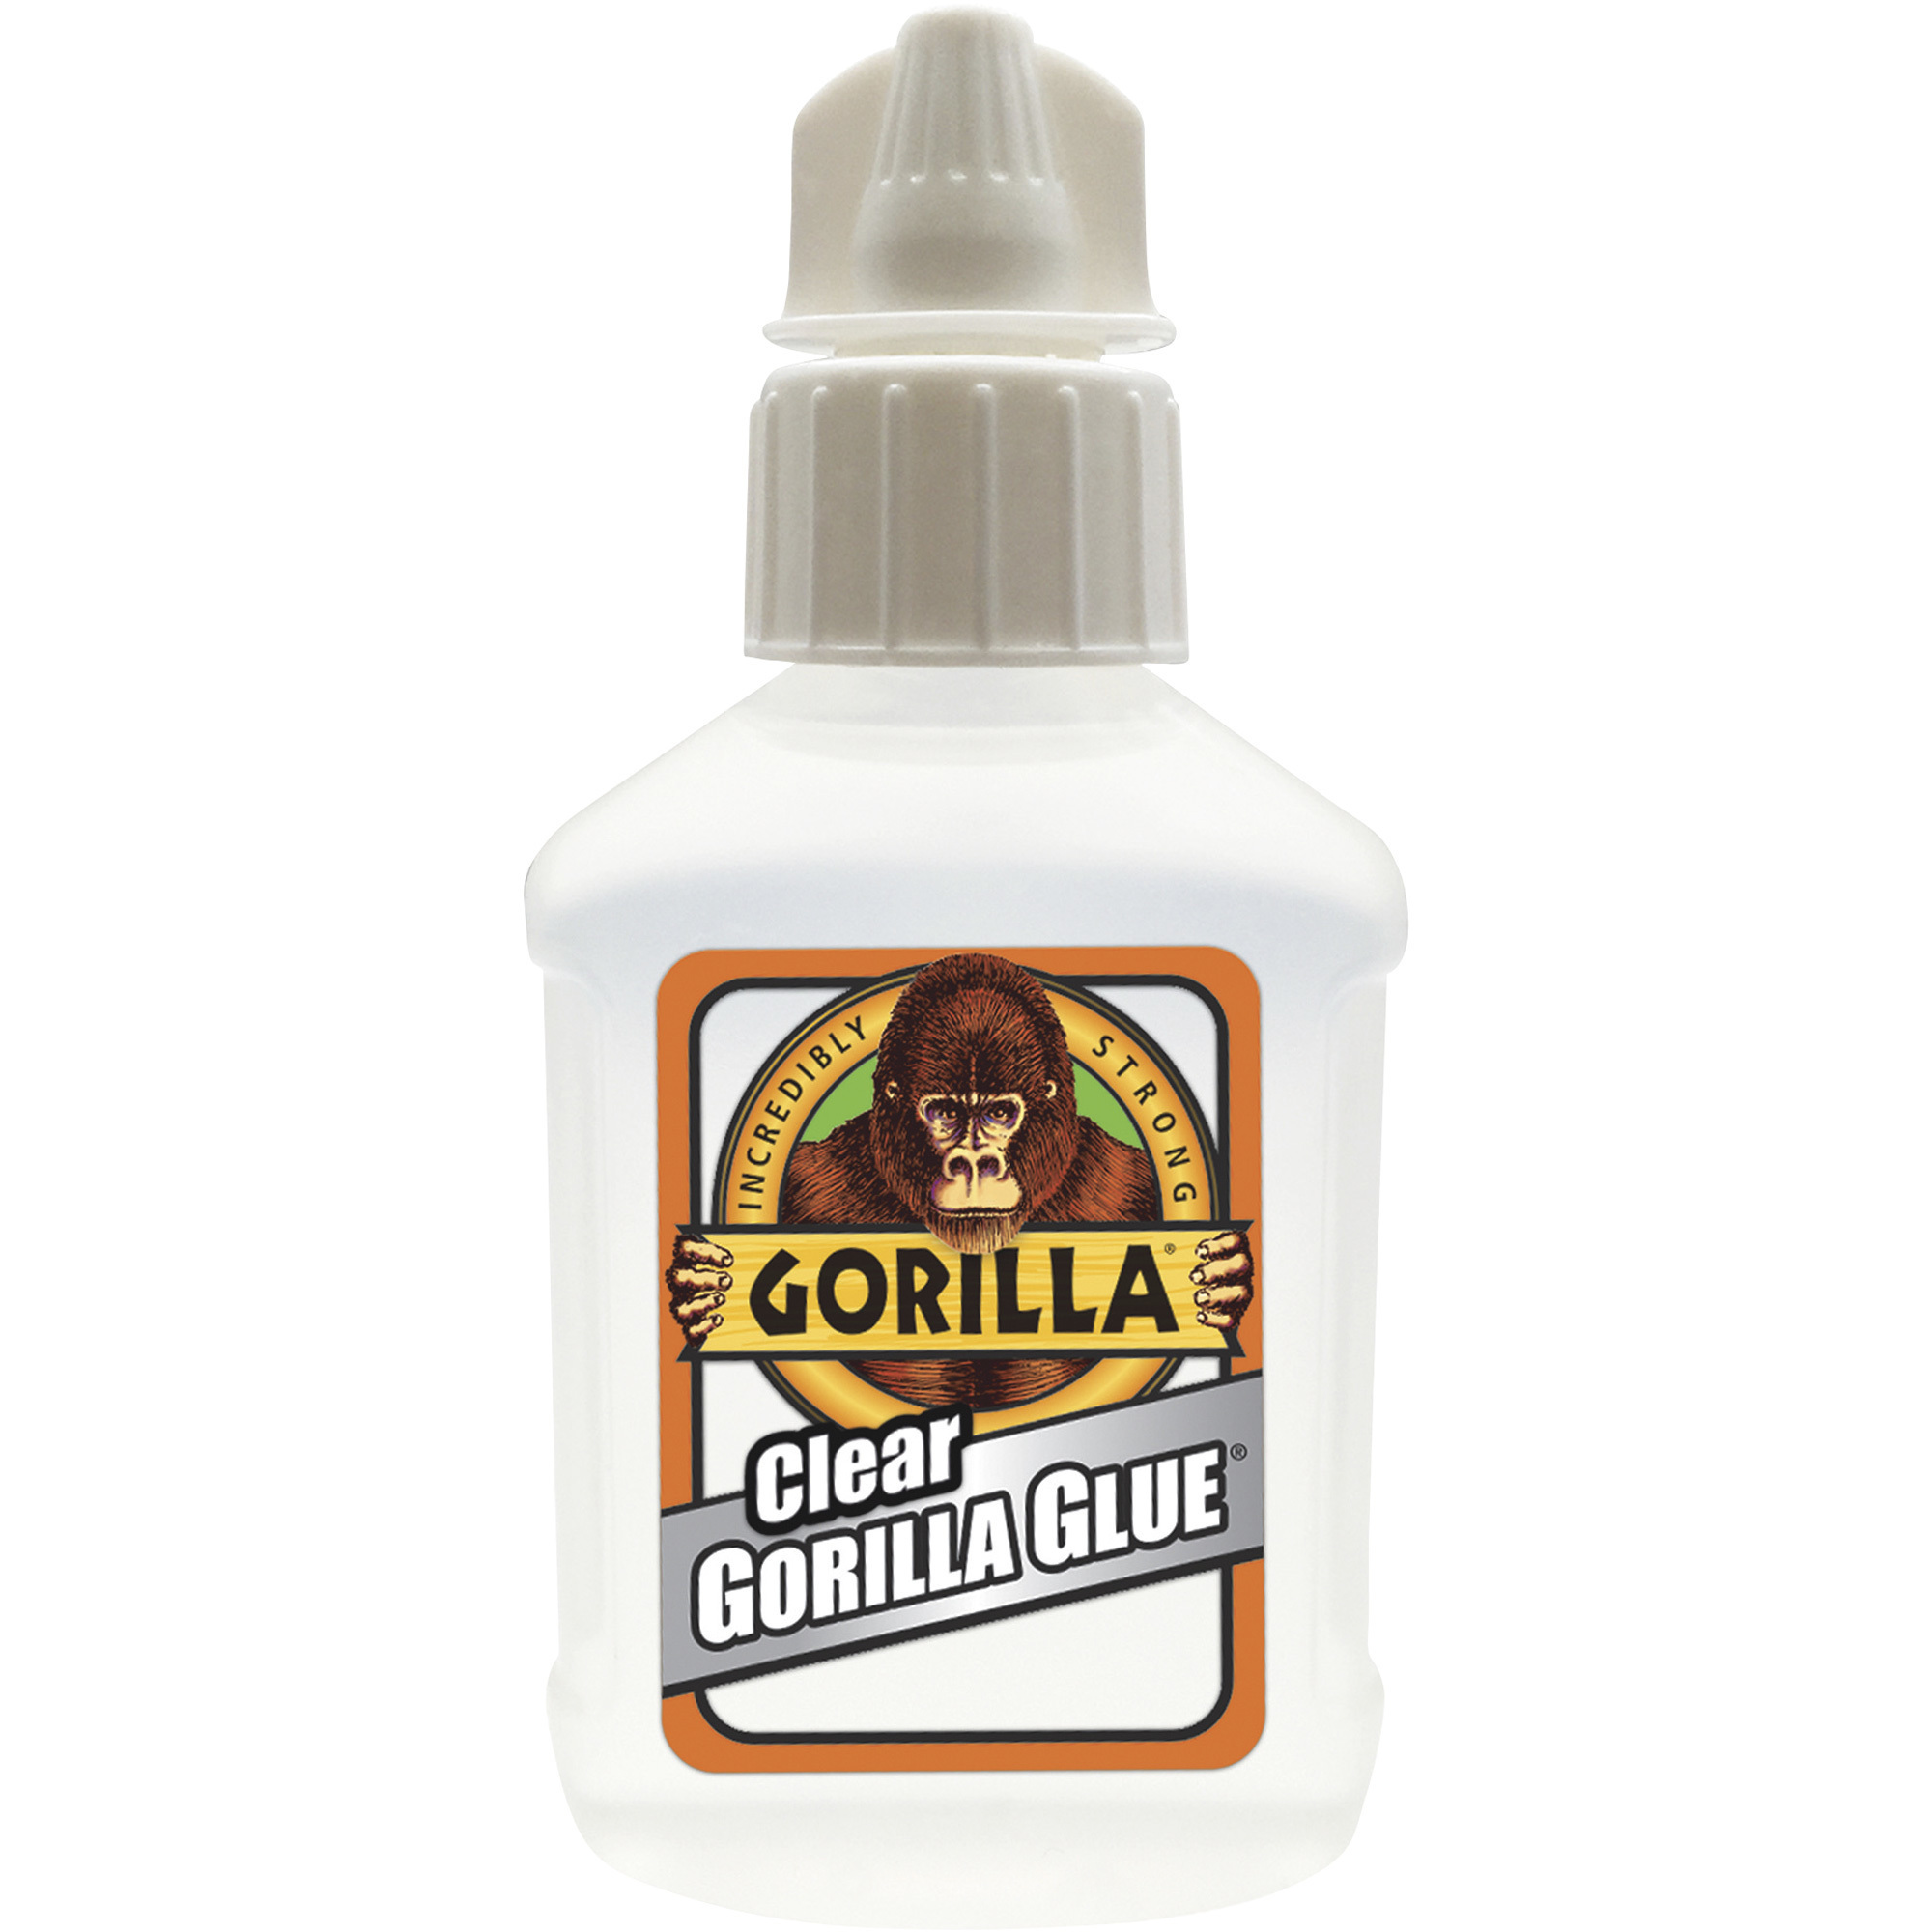 Gorilla Glue â Clear, 1.75-Oz. Bottle